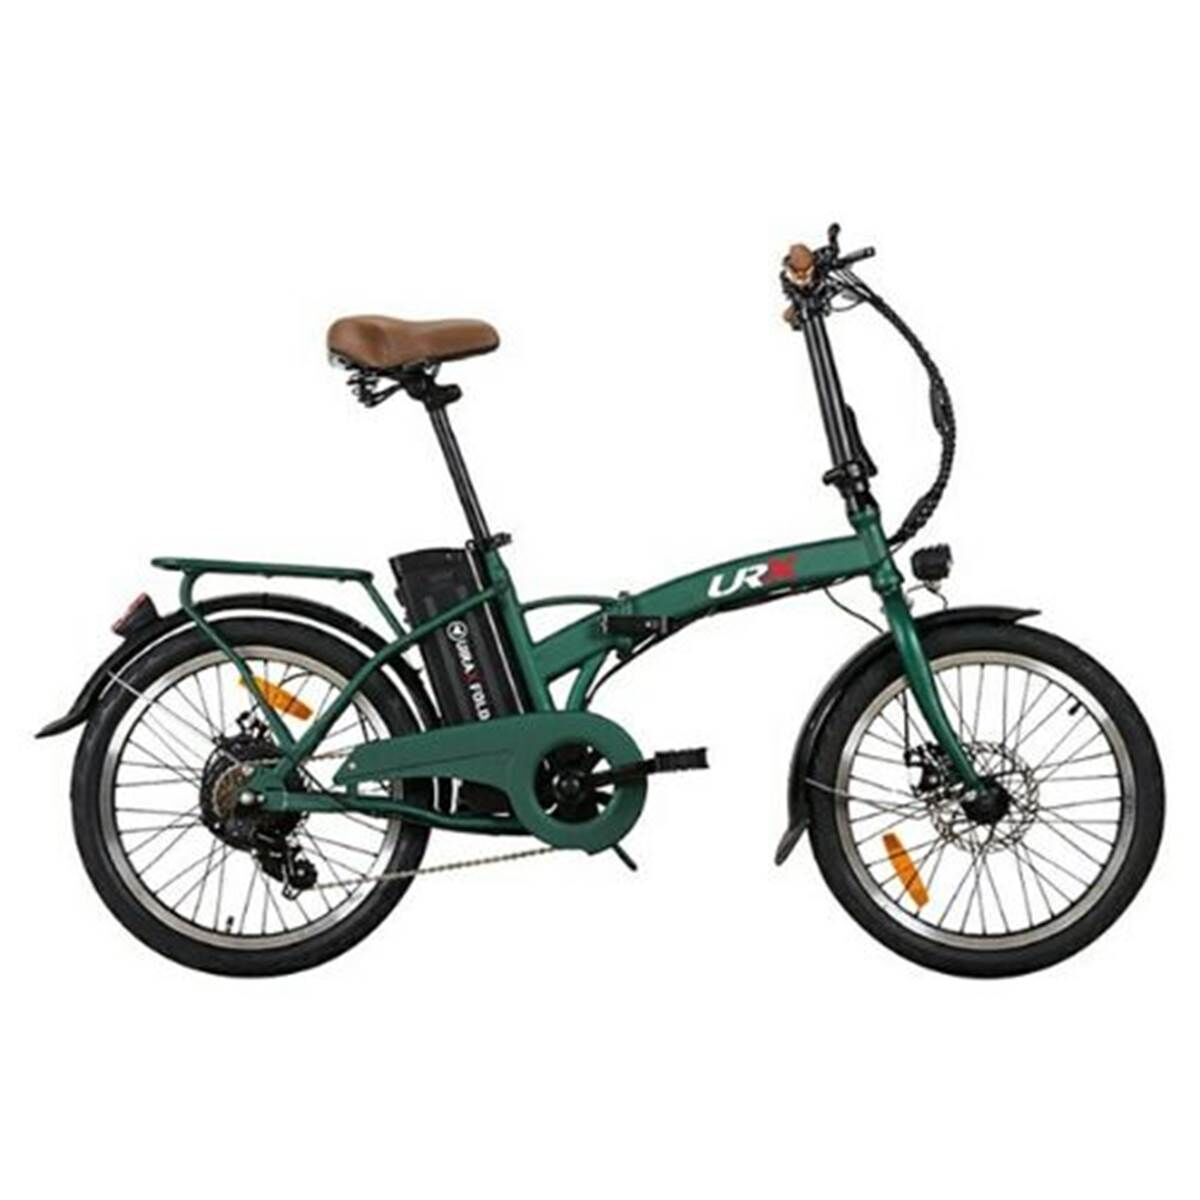 RKS Bici eléctrica plegable  Shimano Uirax fold urbana V2 Verde